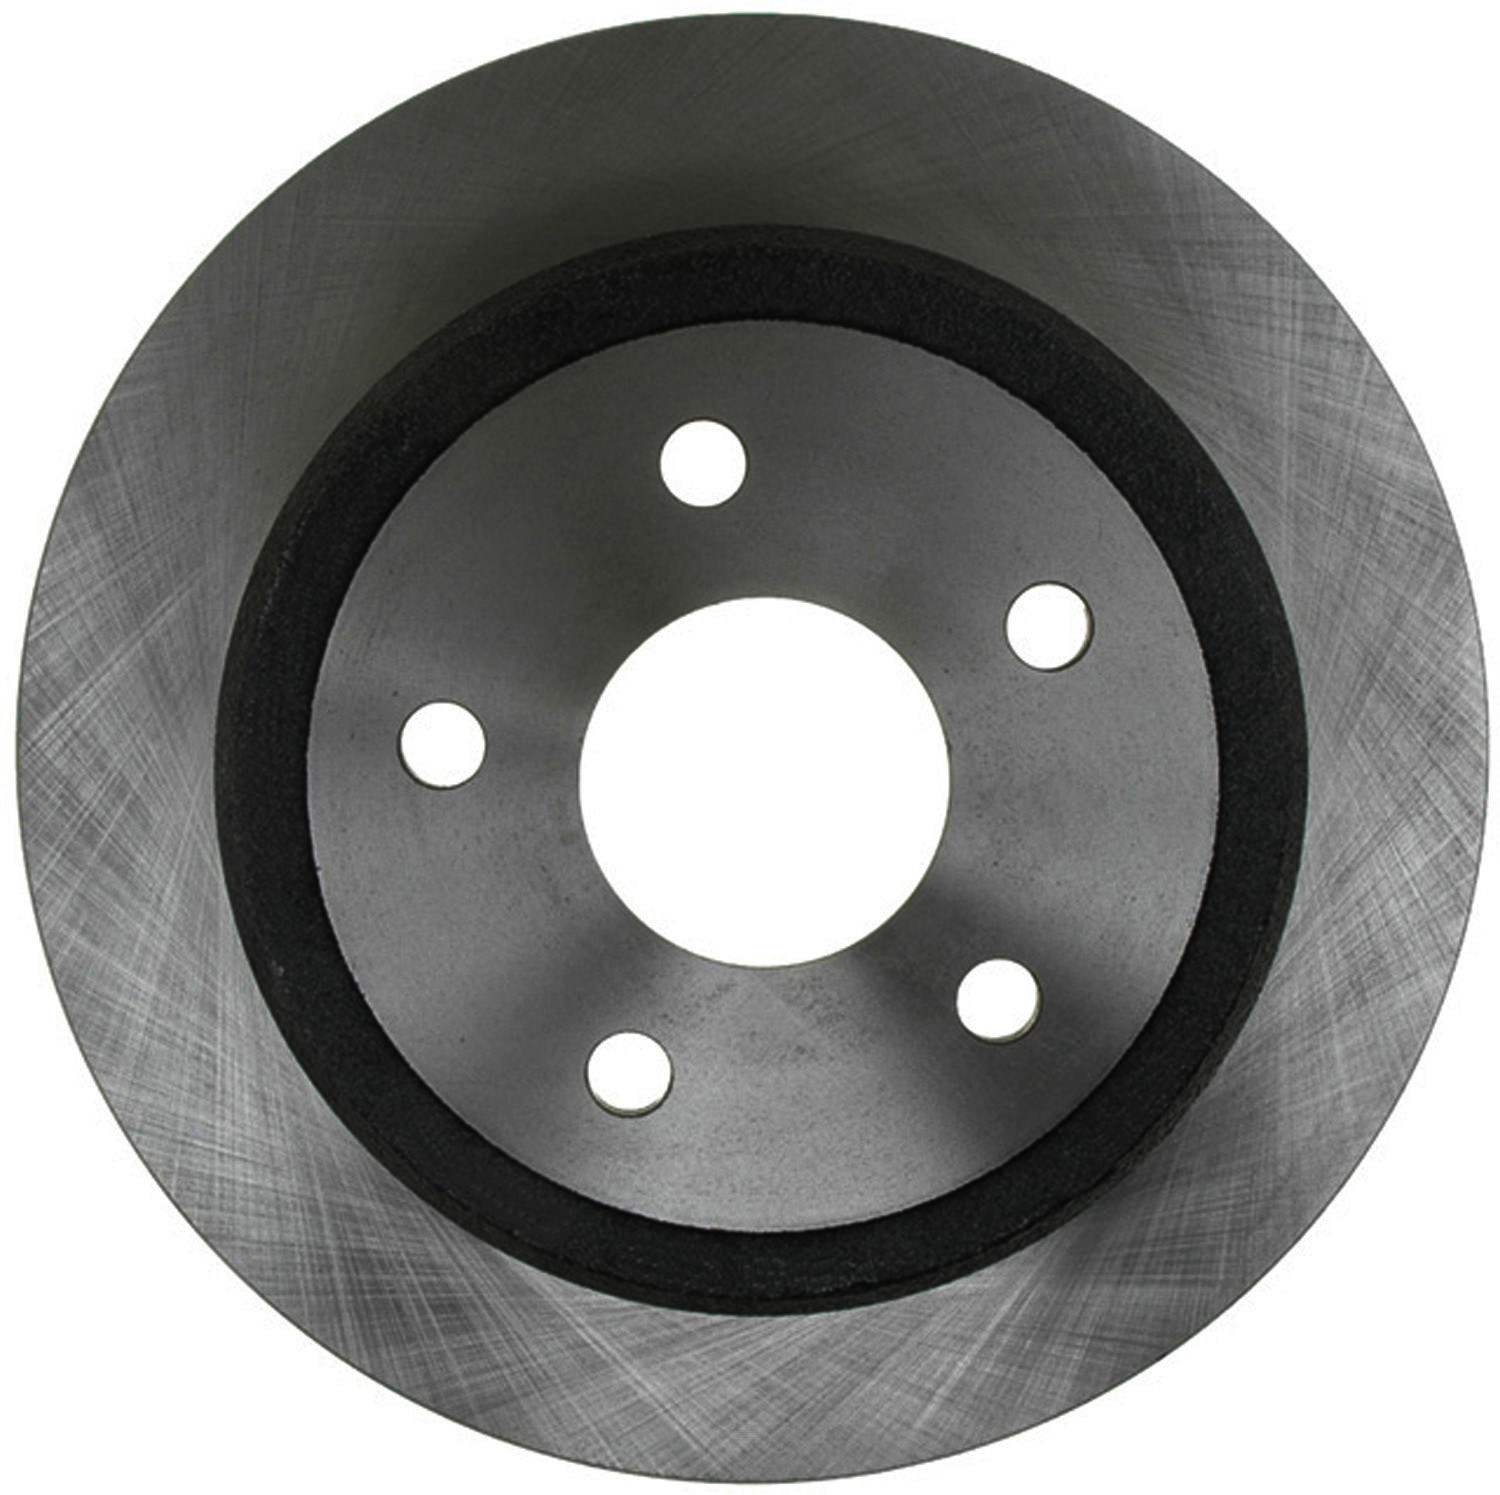 ACDELCO SILVER/ADVANTAGE - Non-Coated Disc Brake Rotor (Rear) - DCD 18A2363A